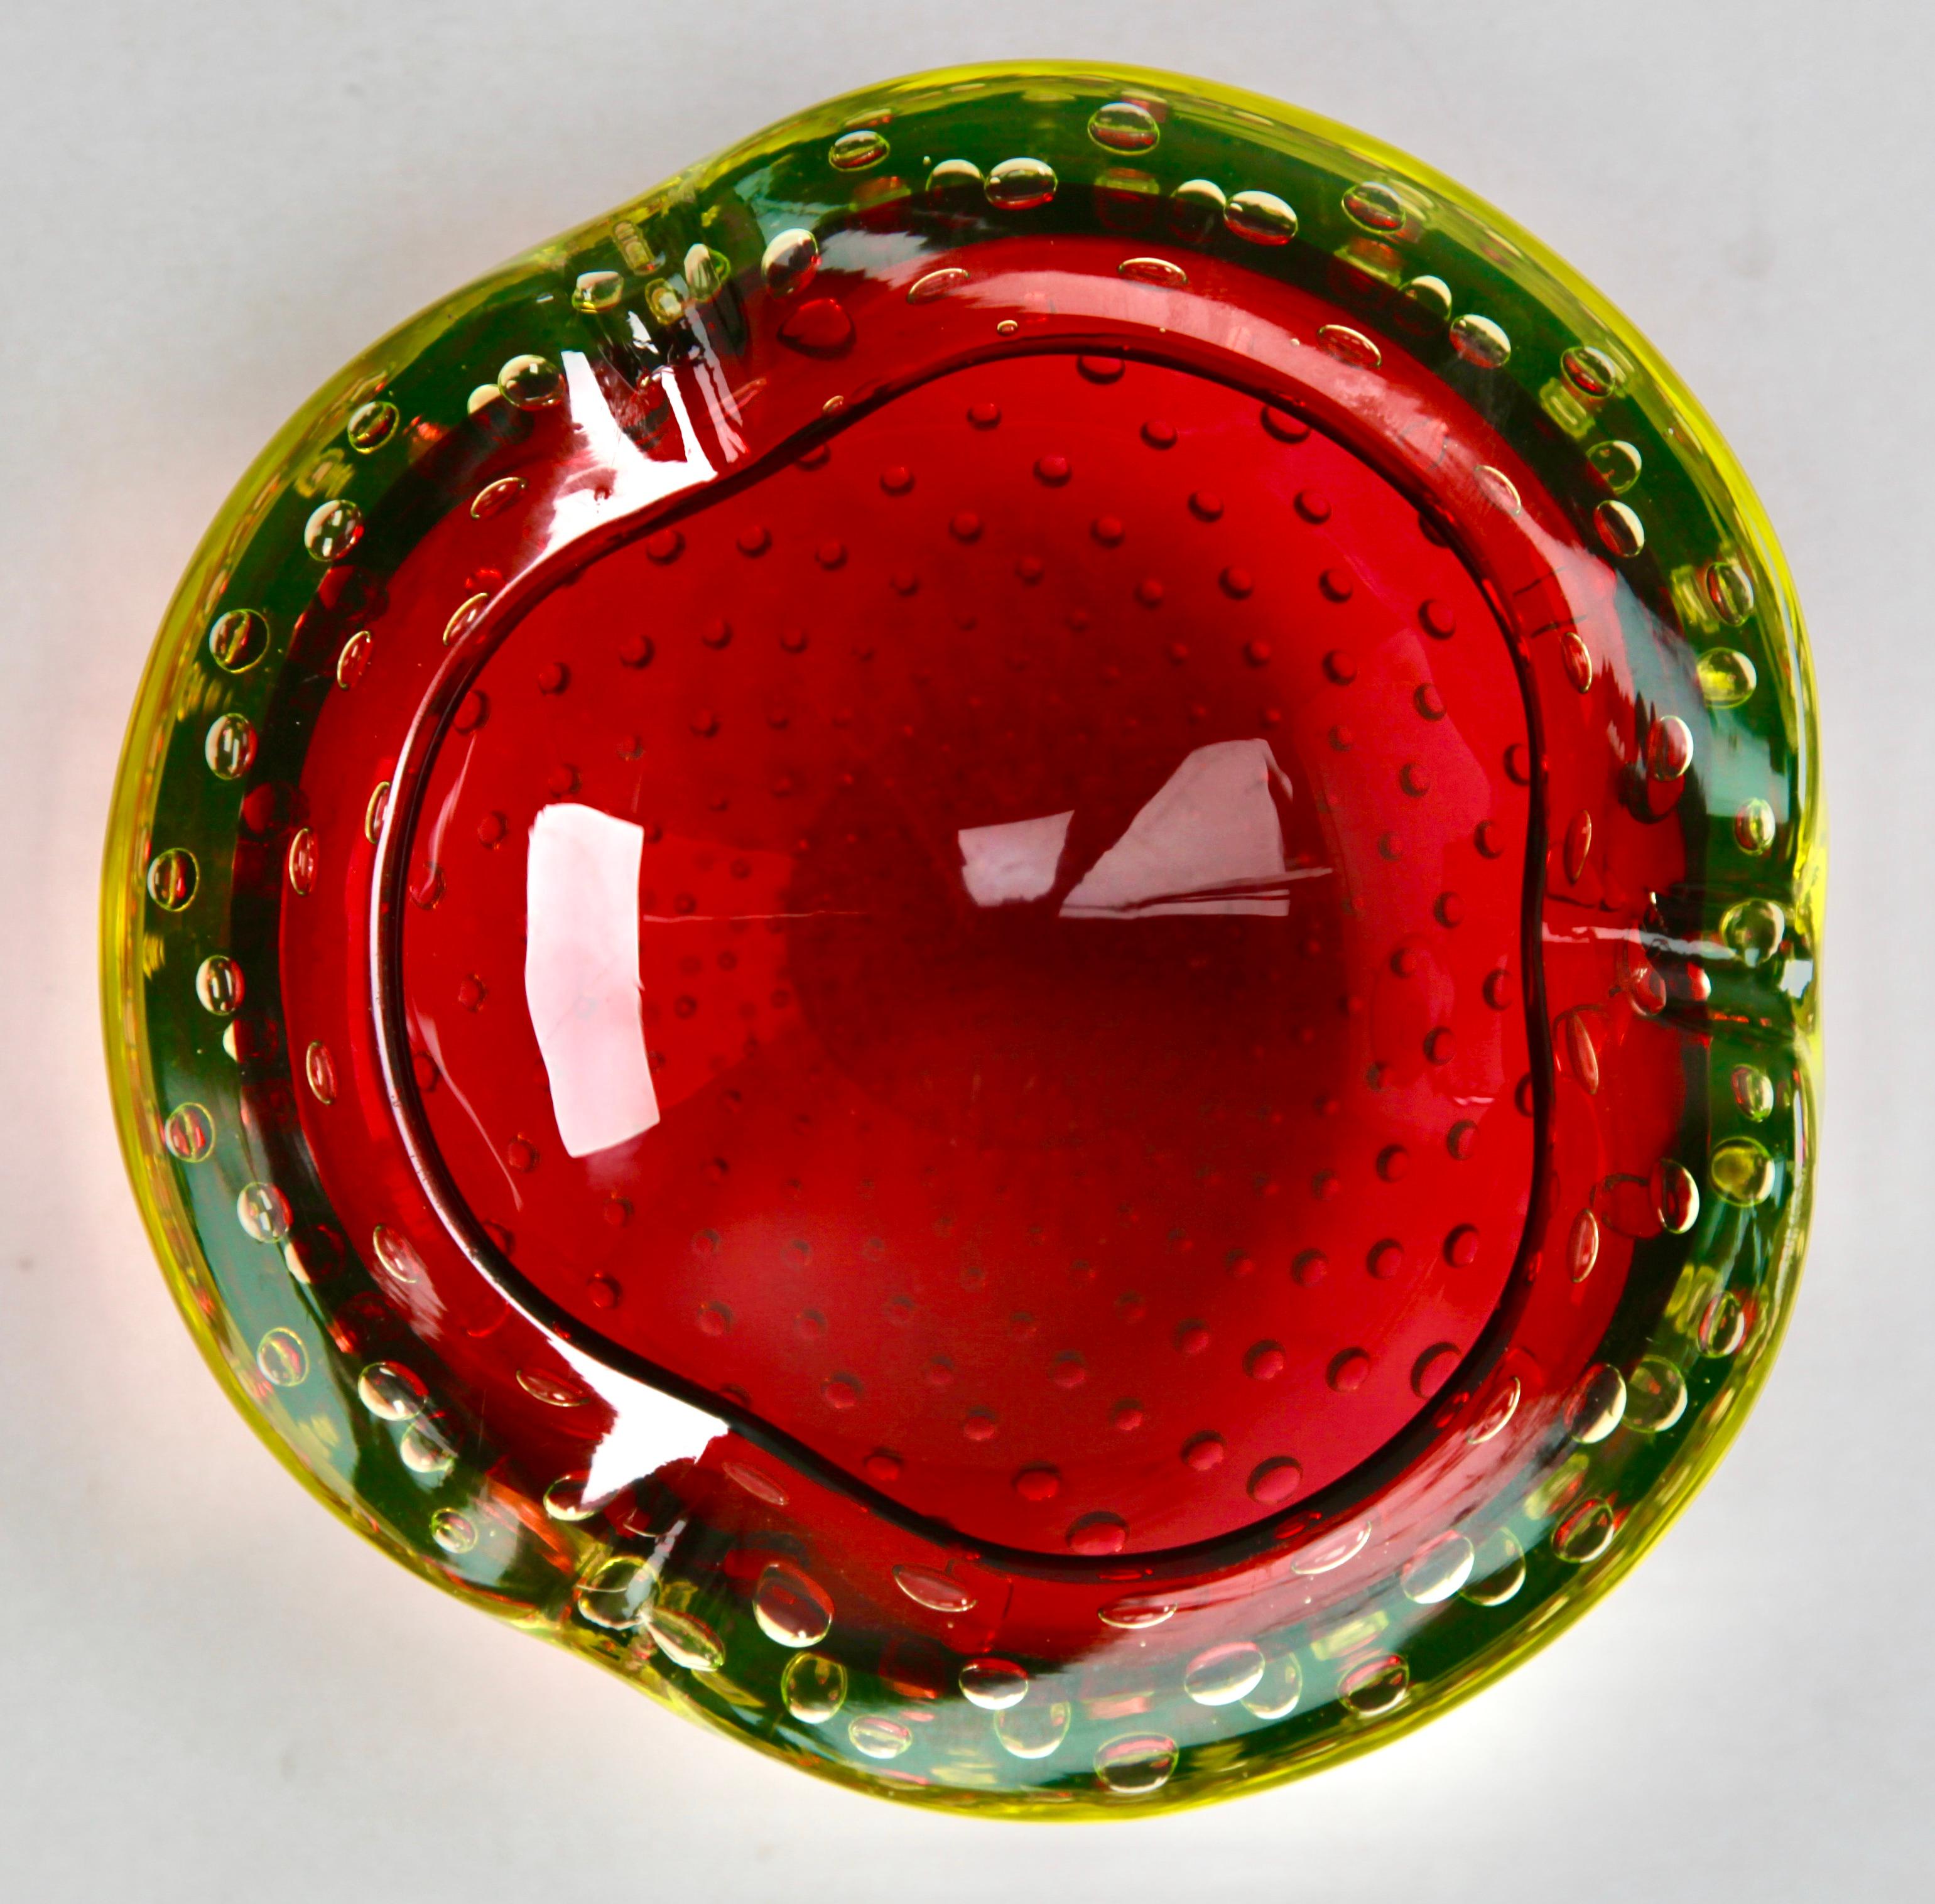 Diese biomorphe Schale aus Muranoglas wird Flavio Poli für Seguso d'Arte zugeschrieben. Sie ist handgefertigt und hat rote Akzente, die durchschimmern und Wärme in Ihr Farbschema bringen.
Noch in schönem Zustand mit nur ein paar leichten Kratzern